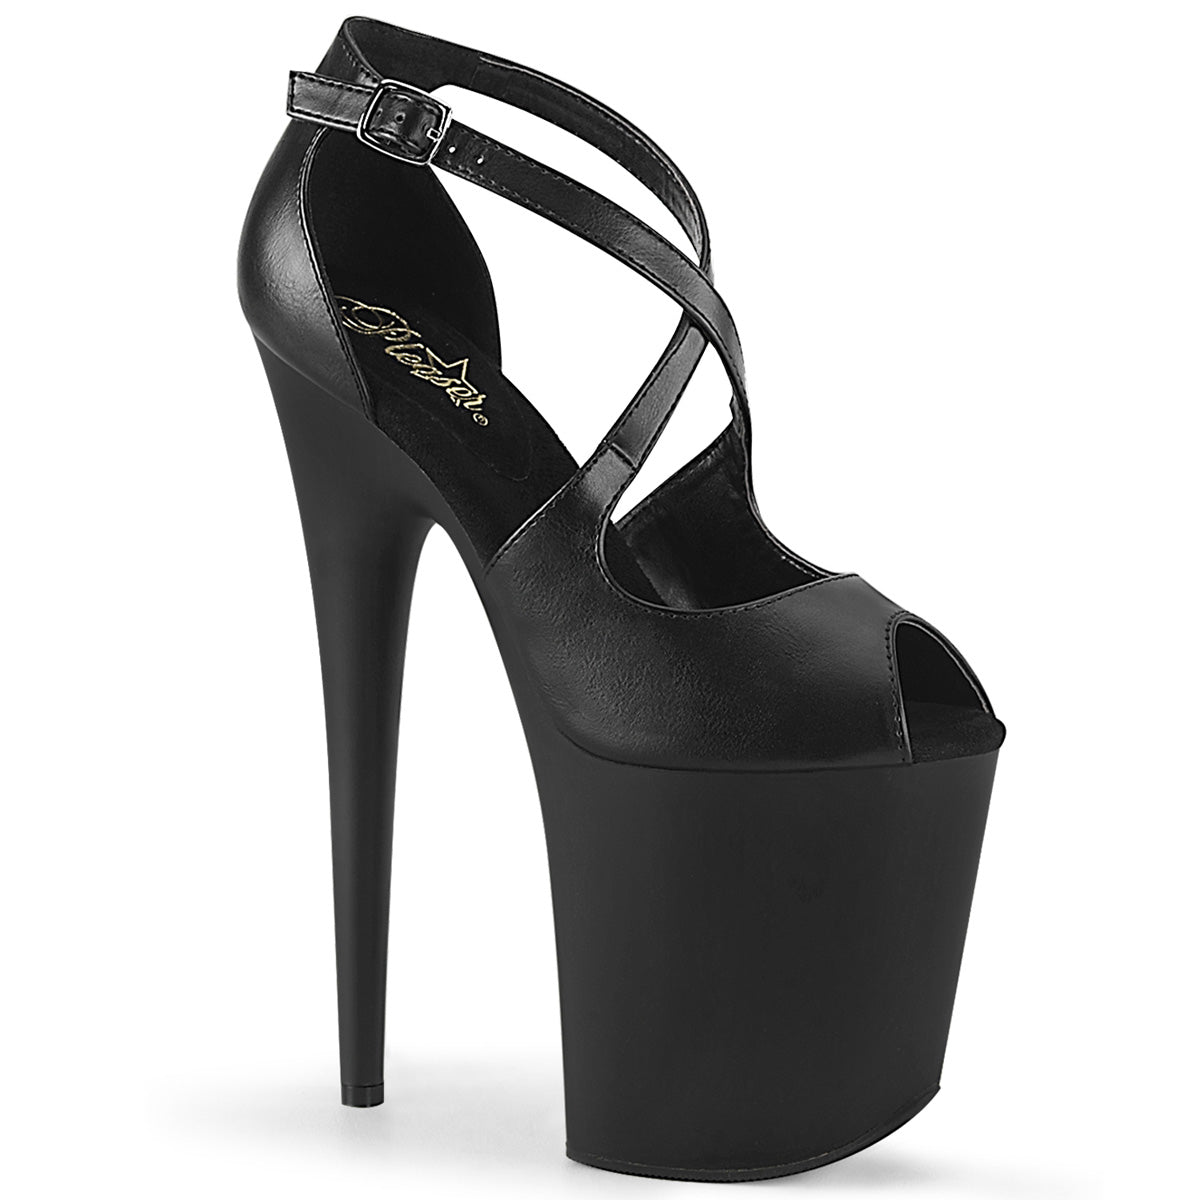 FLAMINGO-821 Pleaser 8 Inch Heel Black Pole Dancer Platform Shoes